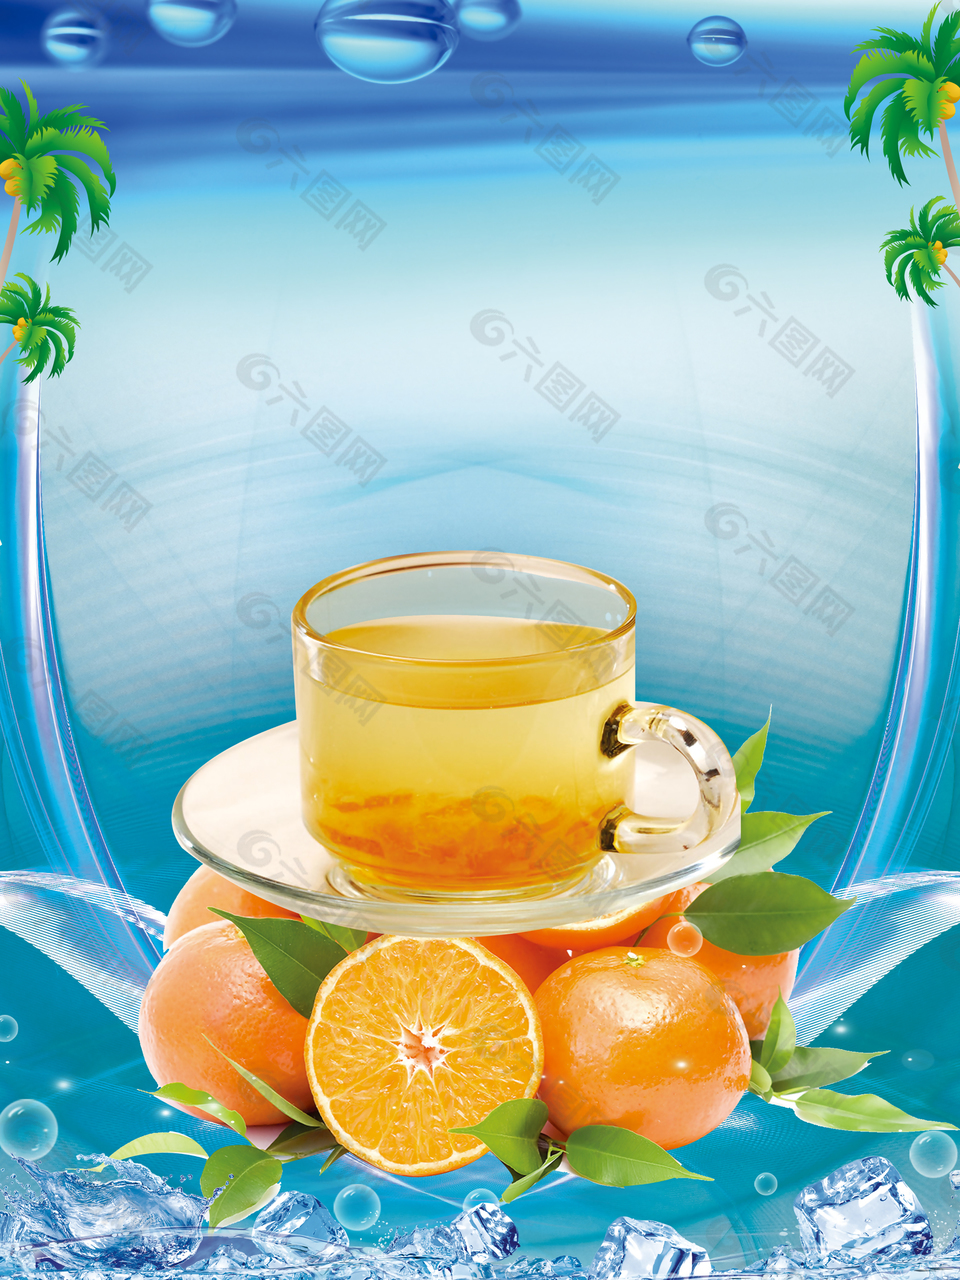 清凉夏日果汁饮料海报背景素材